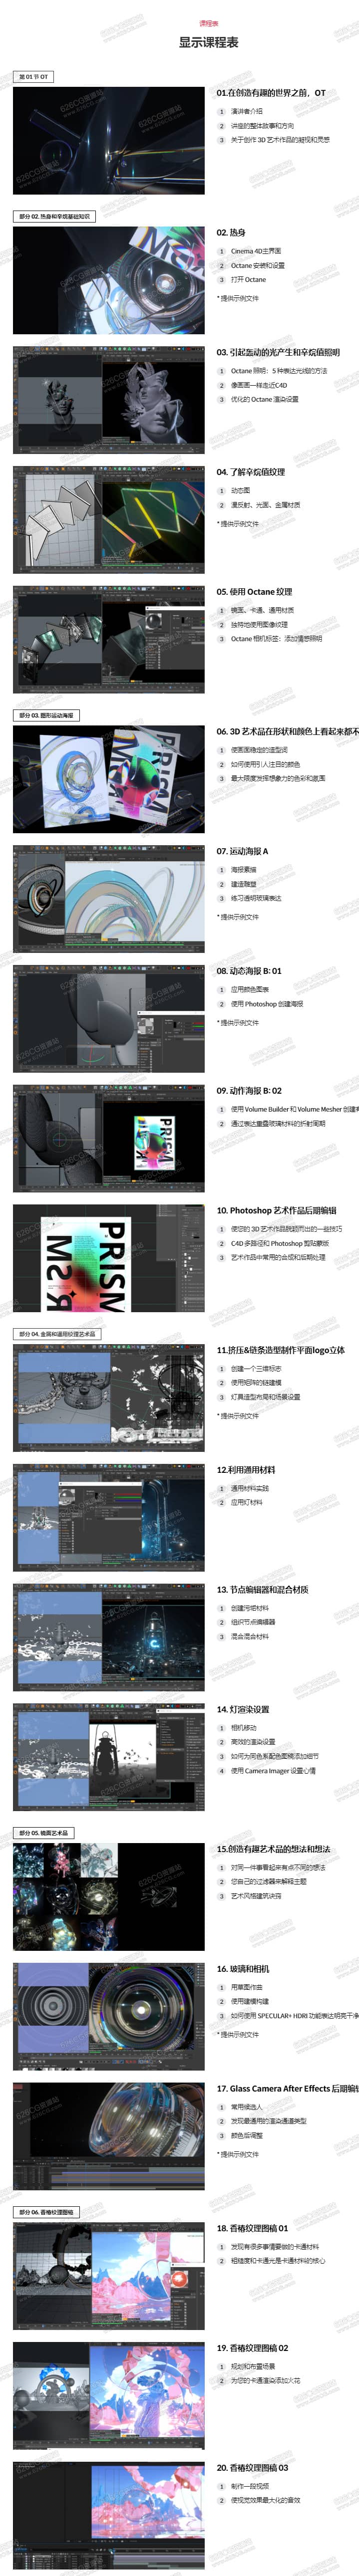 C4D教程 Coloso教程 使用C4D+Octane创建唤醒感官的艺术作品 Hee-soo Kim 中文字幕 626CG资源站